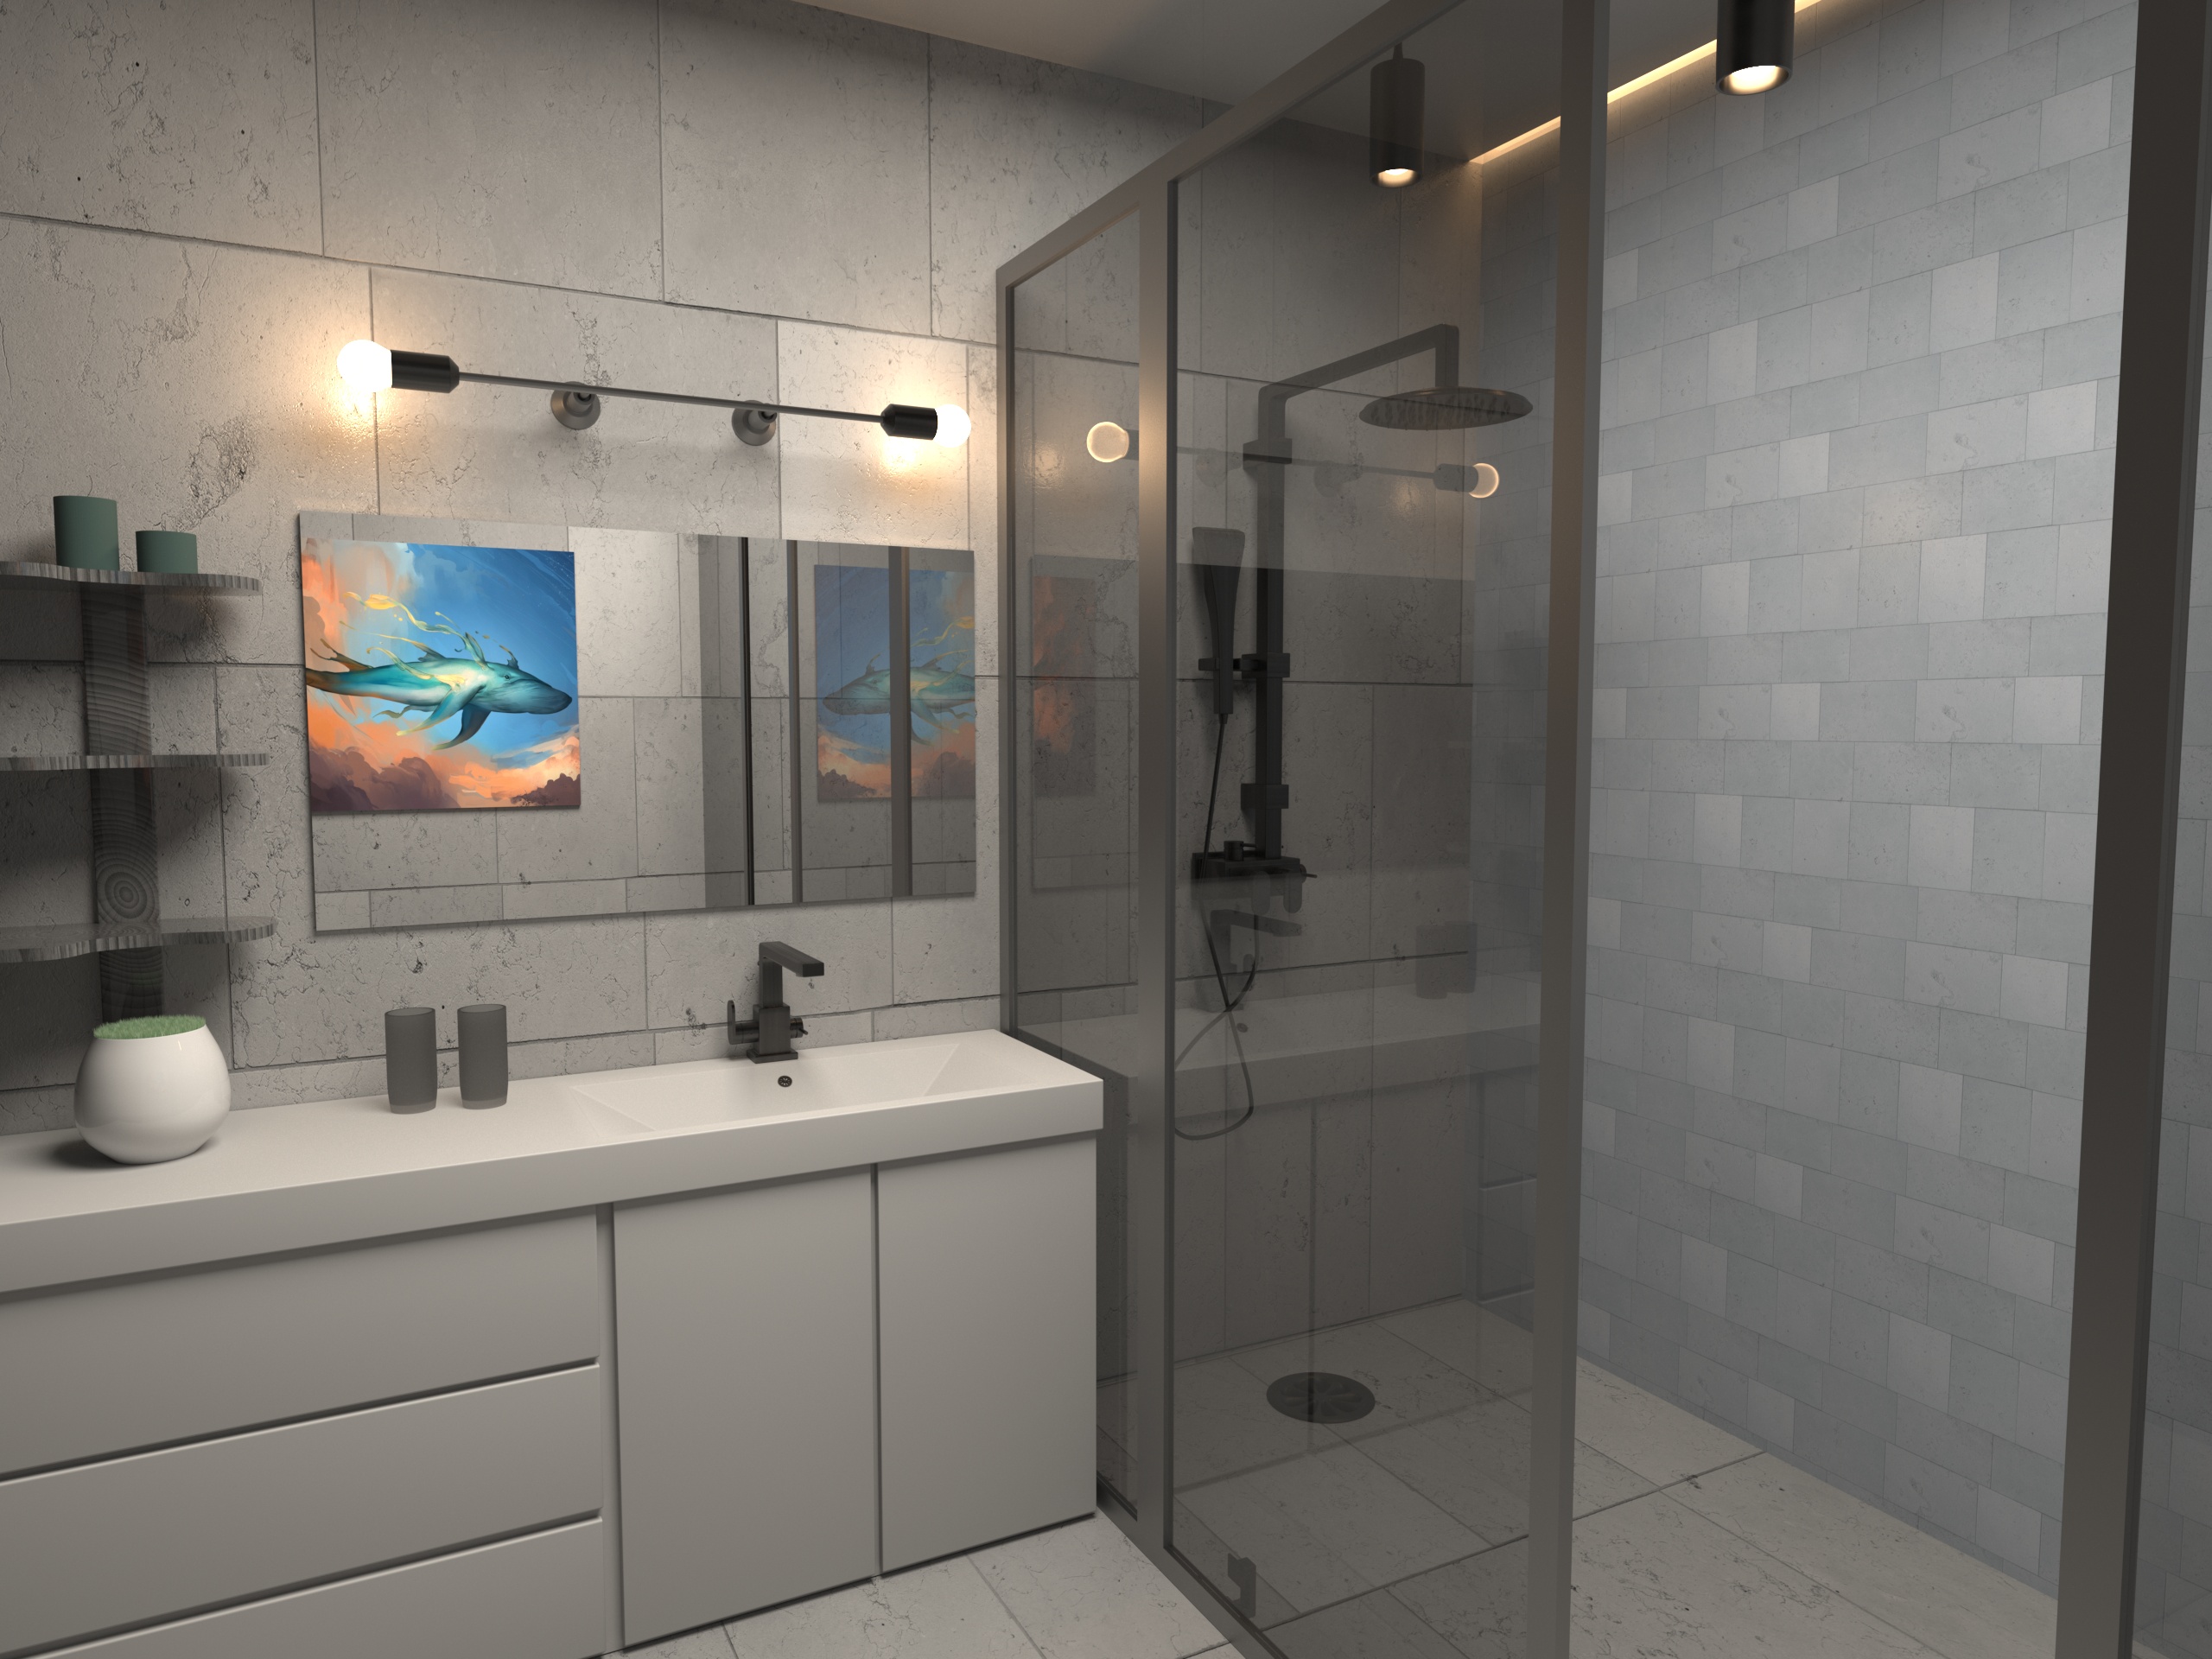 बाथरूम 3d max corona render में प्रस्तुत छवि